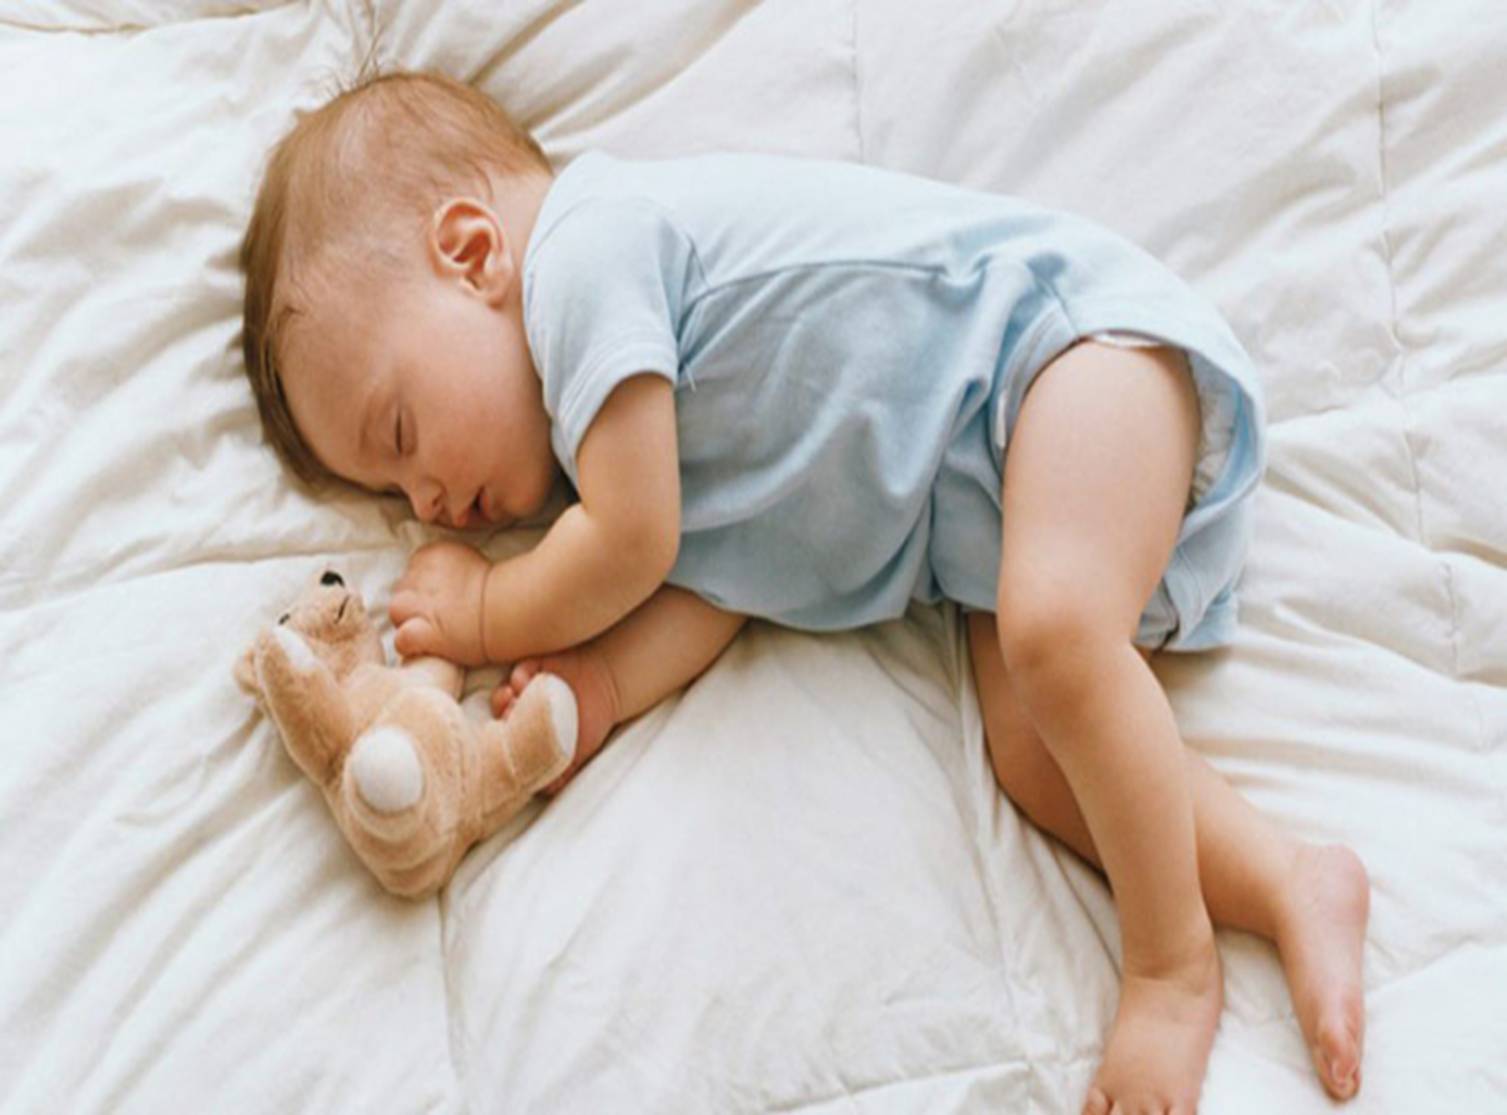 Nghiên cứu tâm lý phát hiện: Những đứa trẻ thông minh thường ngủ tư thế này ngay từ nhỏ-2